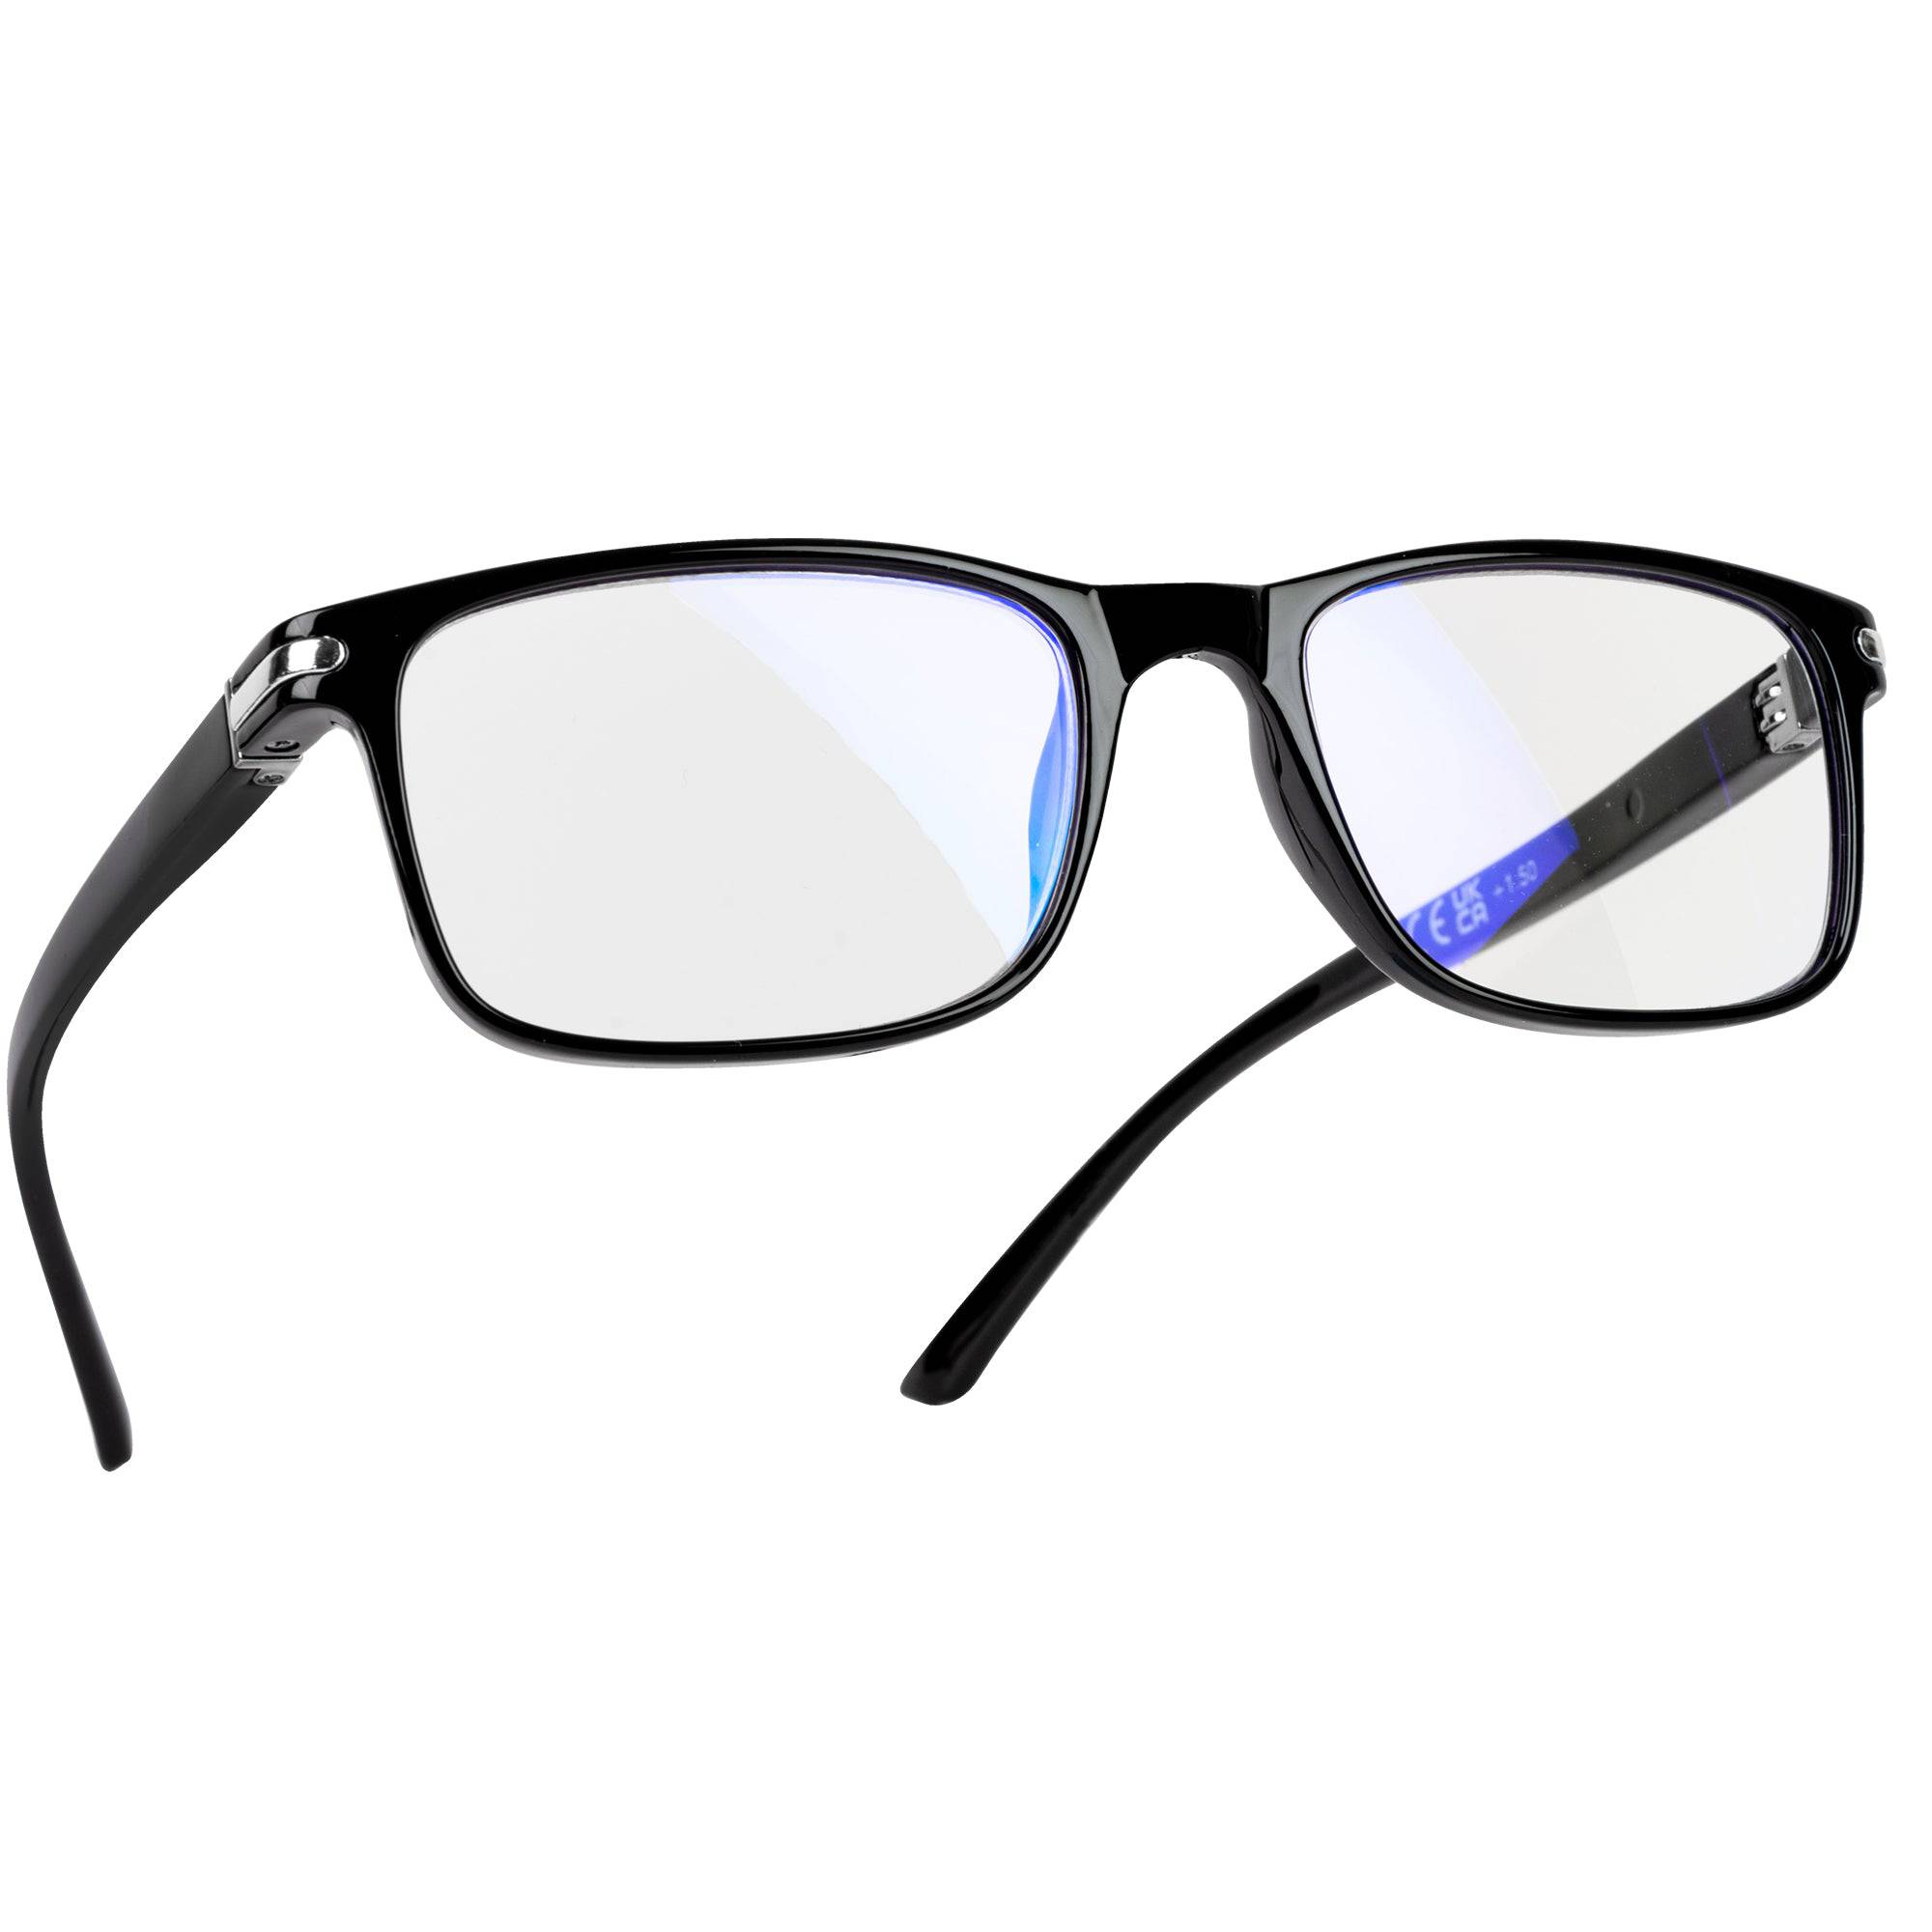 Reading Glasses 2.0 (Rectangular Frame) - iN Vision - DSL